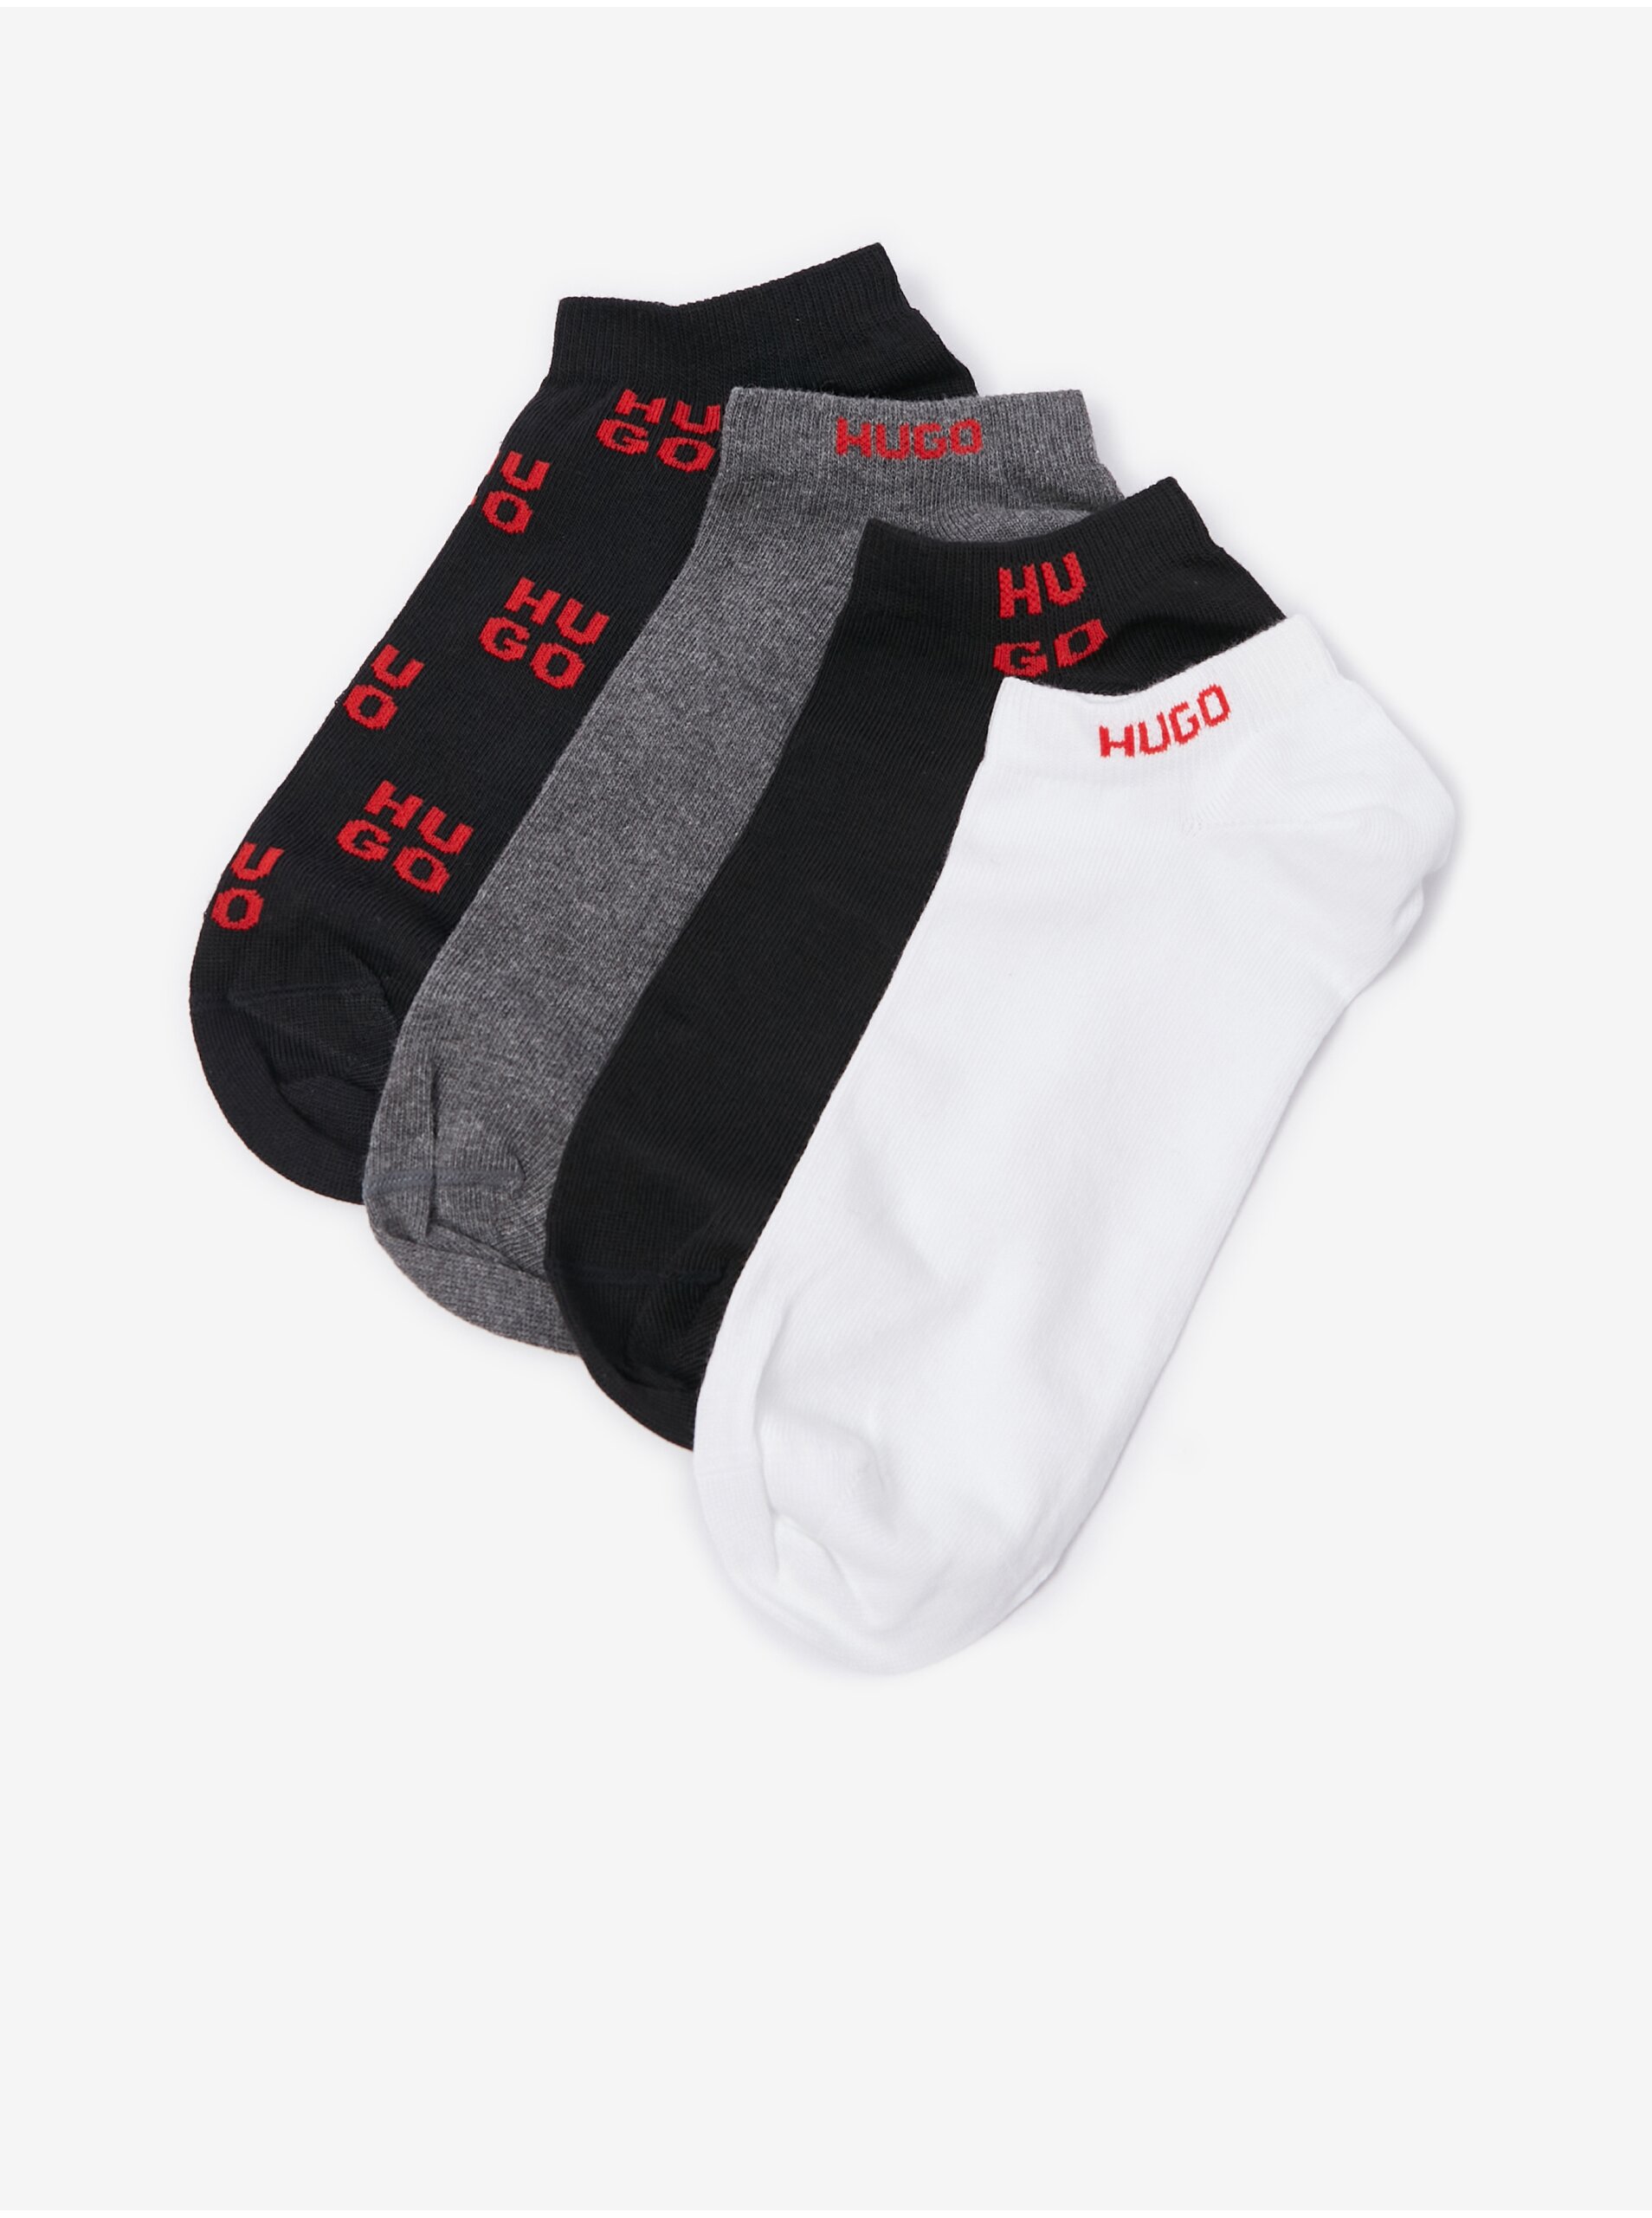 Lacno Súprava štyroch párov pánskych členkových ponožiek v čiernej, šedej a bielej farbe BOSS